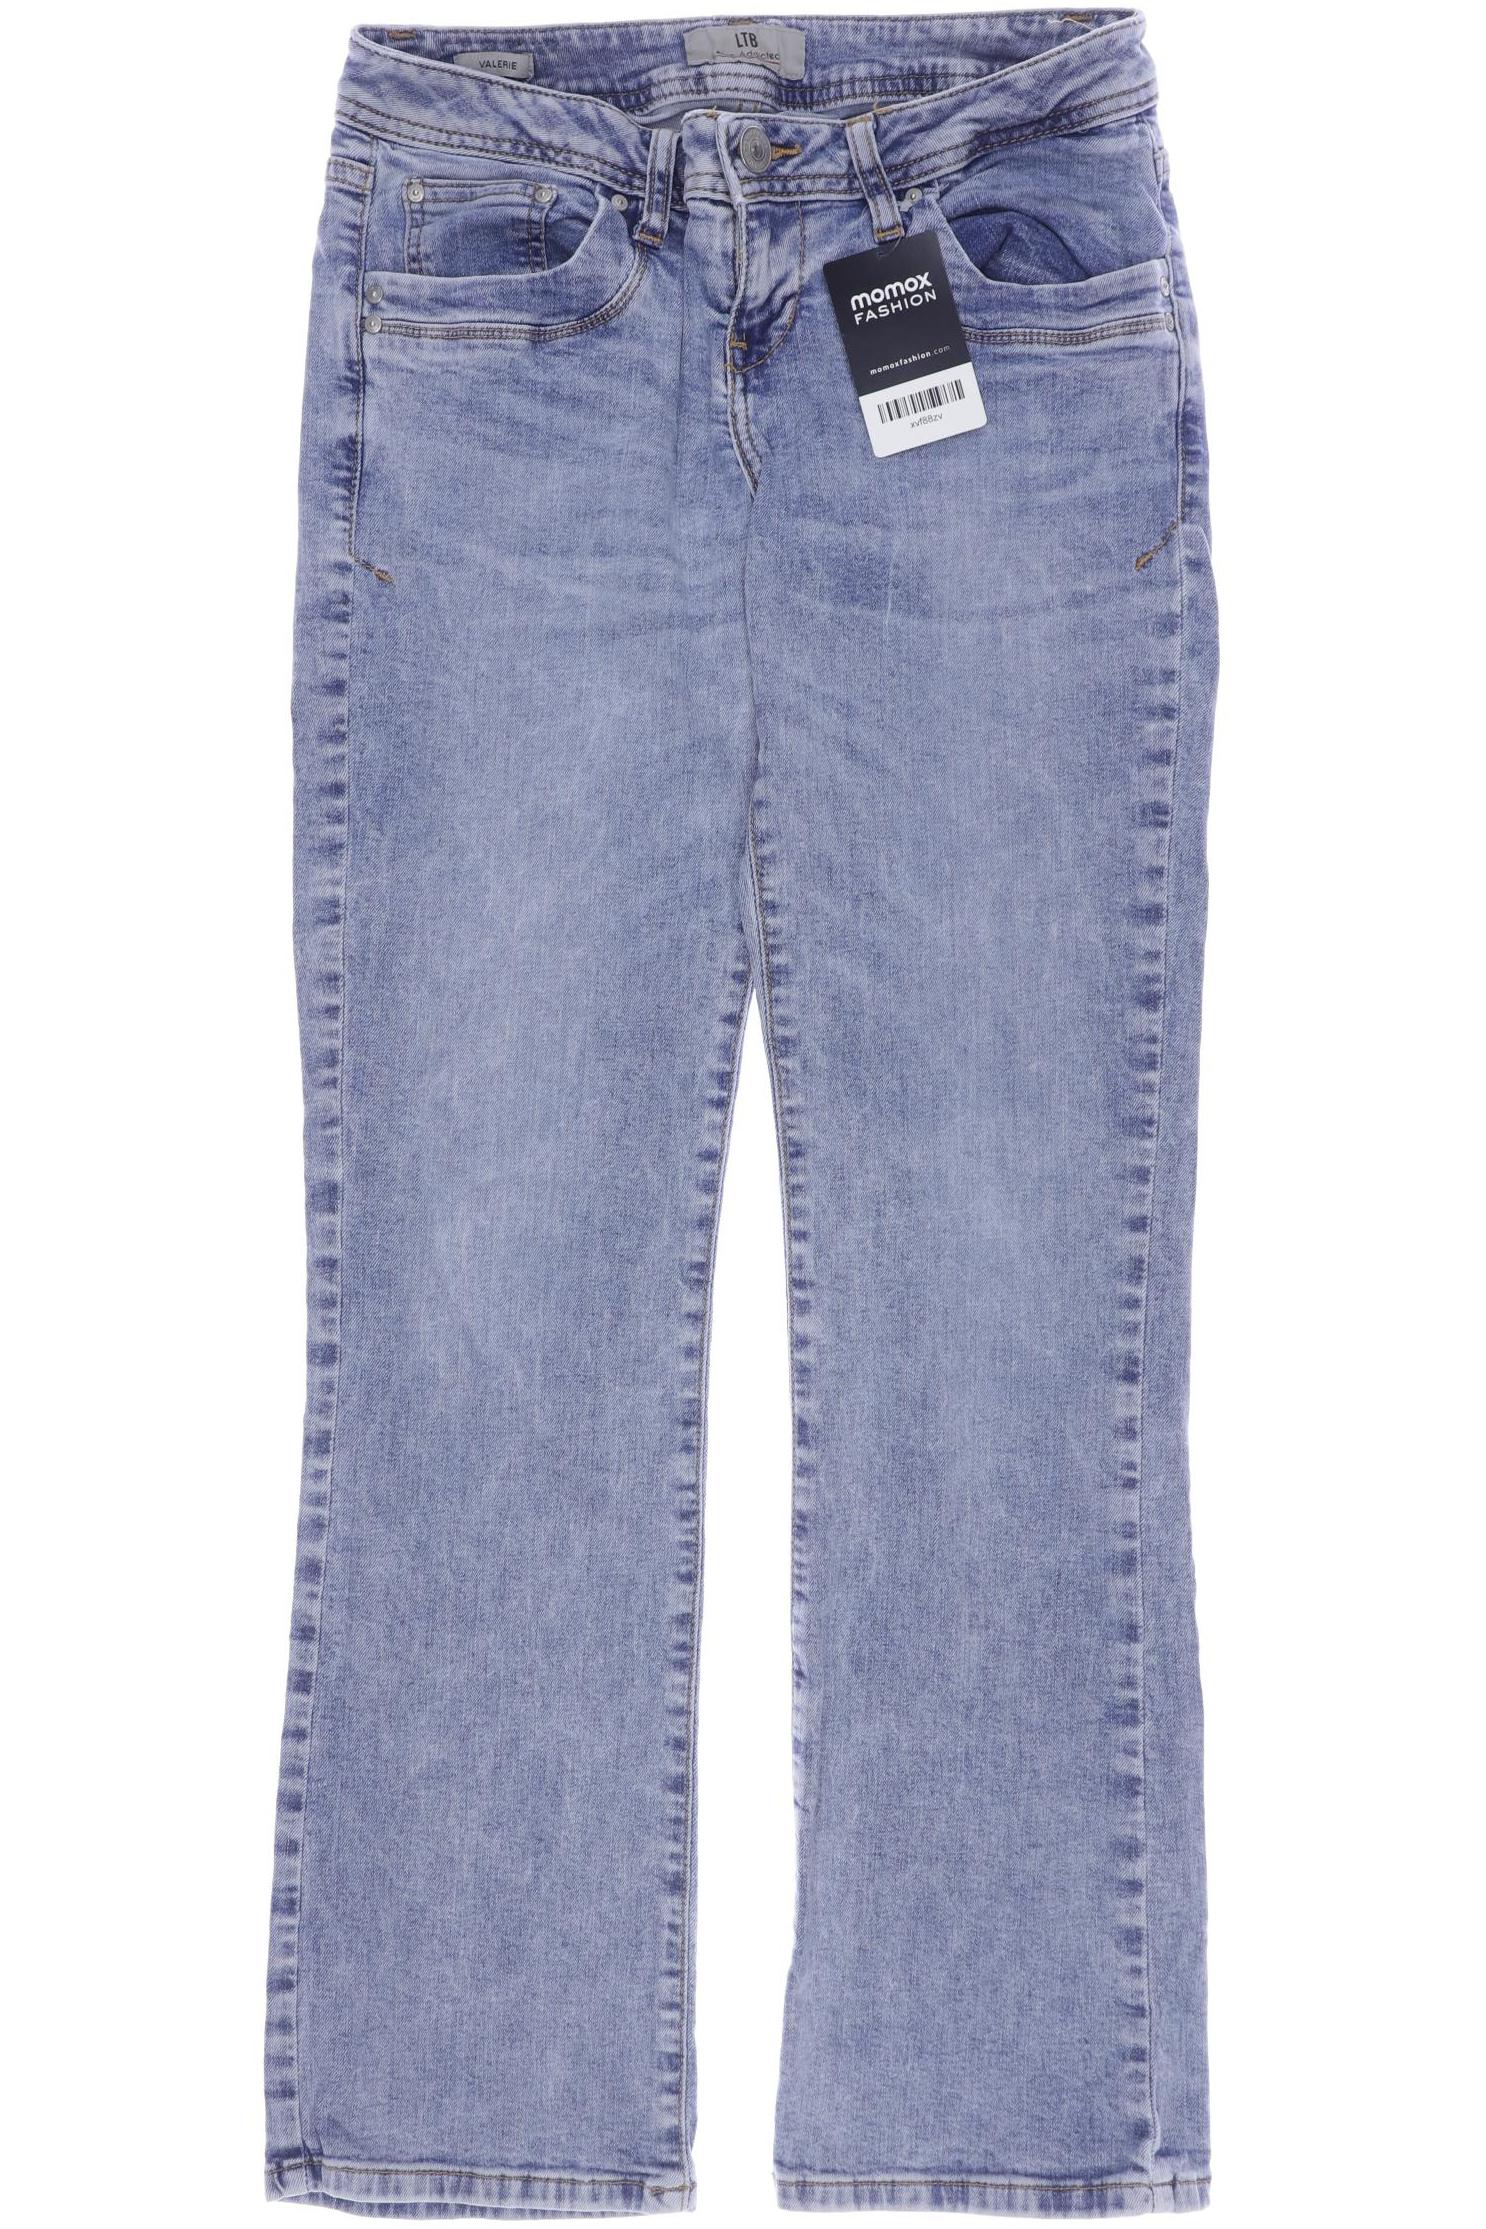 LTB Damen Jeans, hellblau, Gr. 38 von LTB